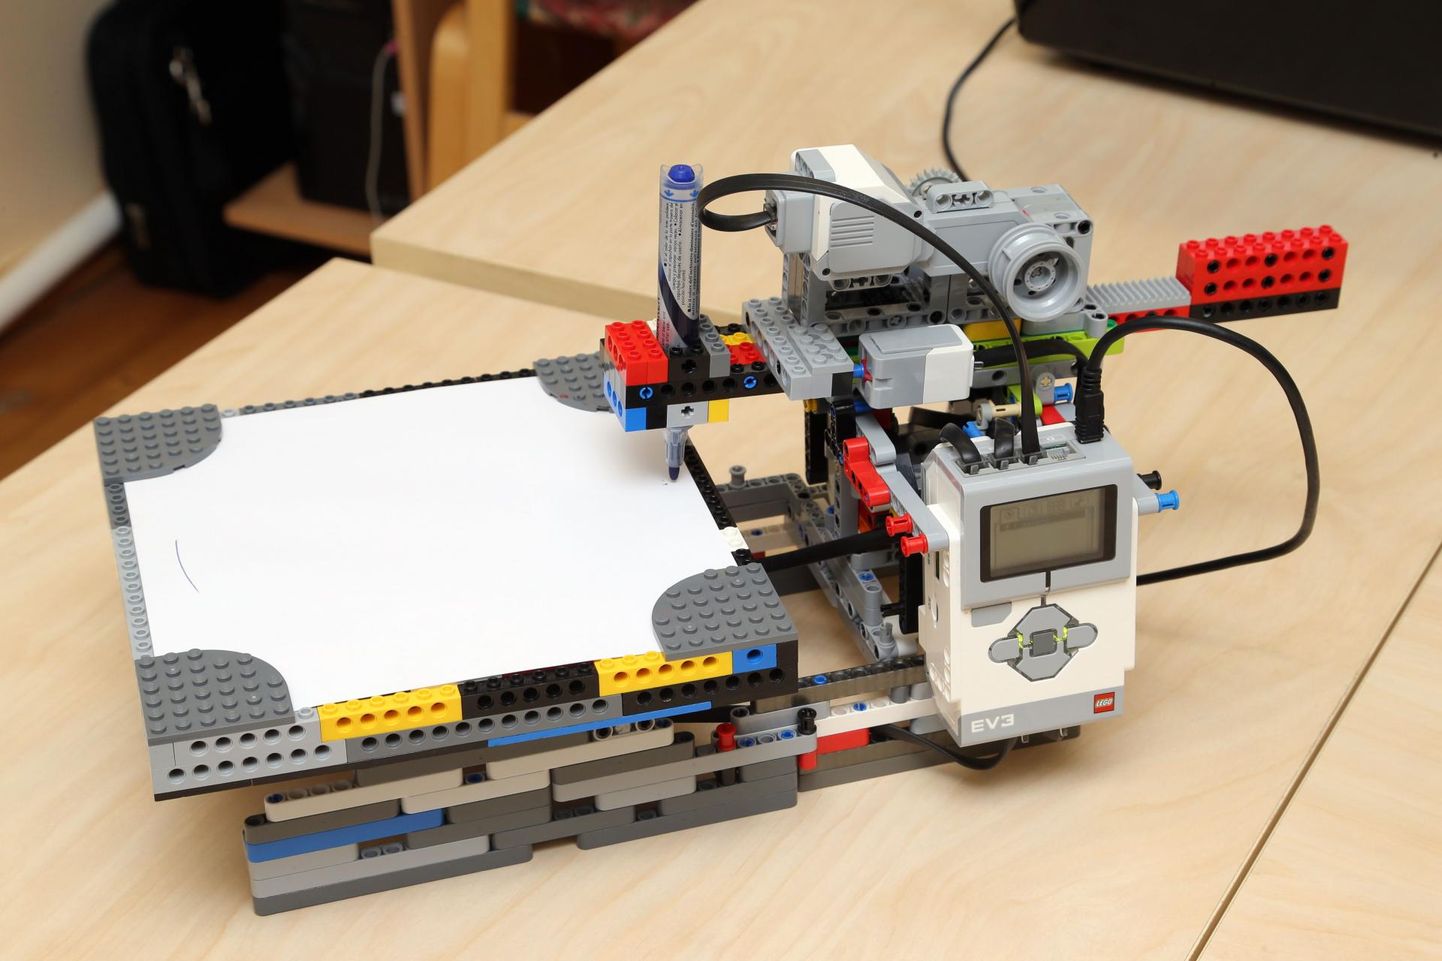 Üks digivõistluse ülesanne on Lego tükkidest robotite või kujundite ehitamine.